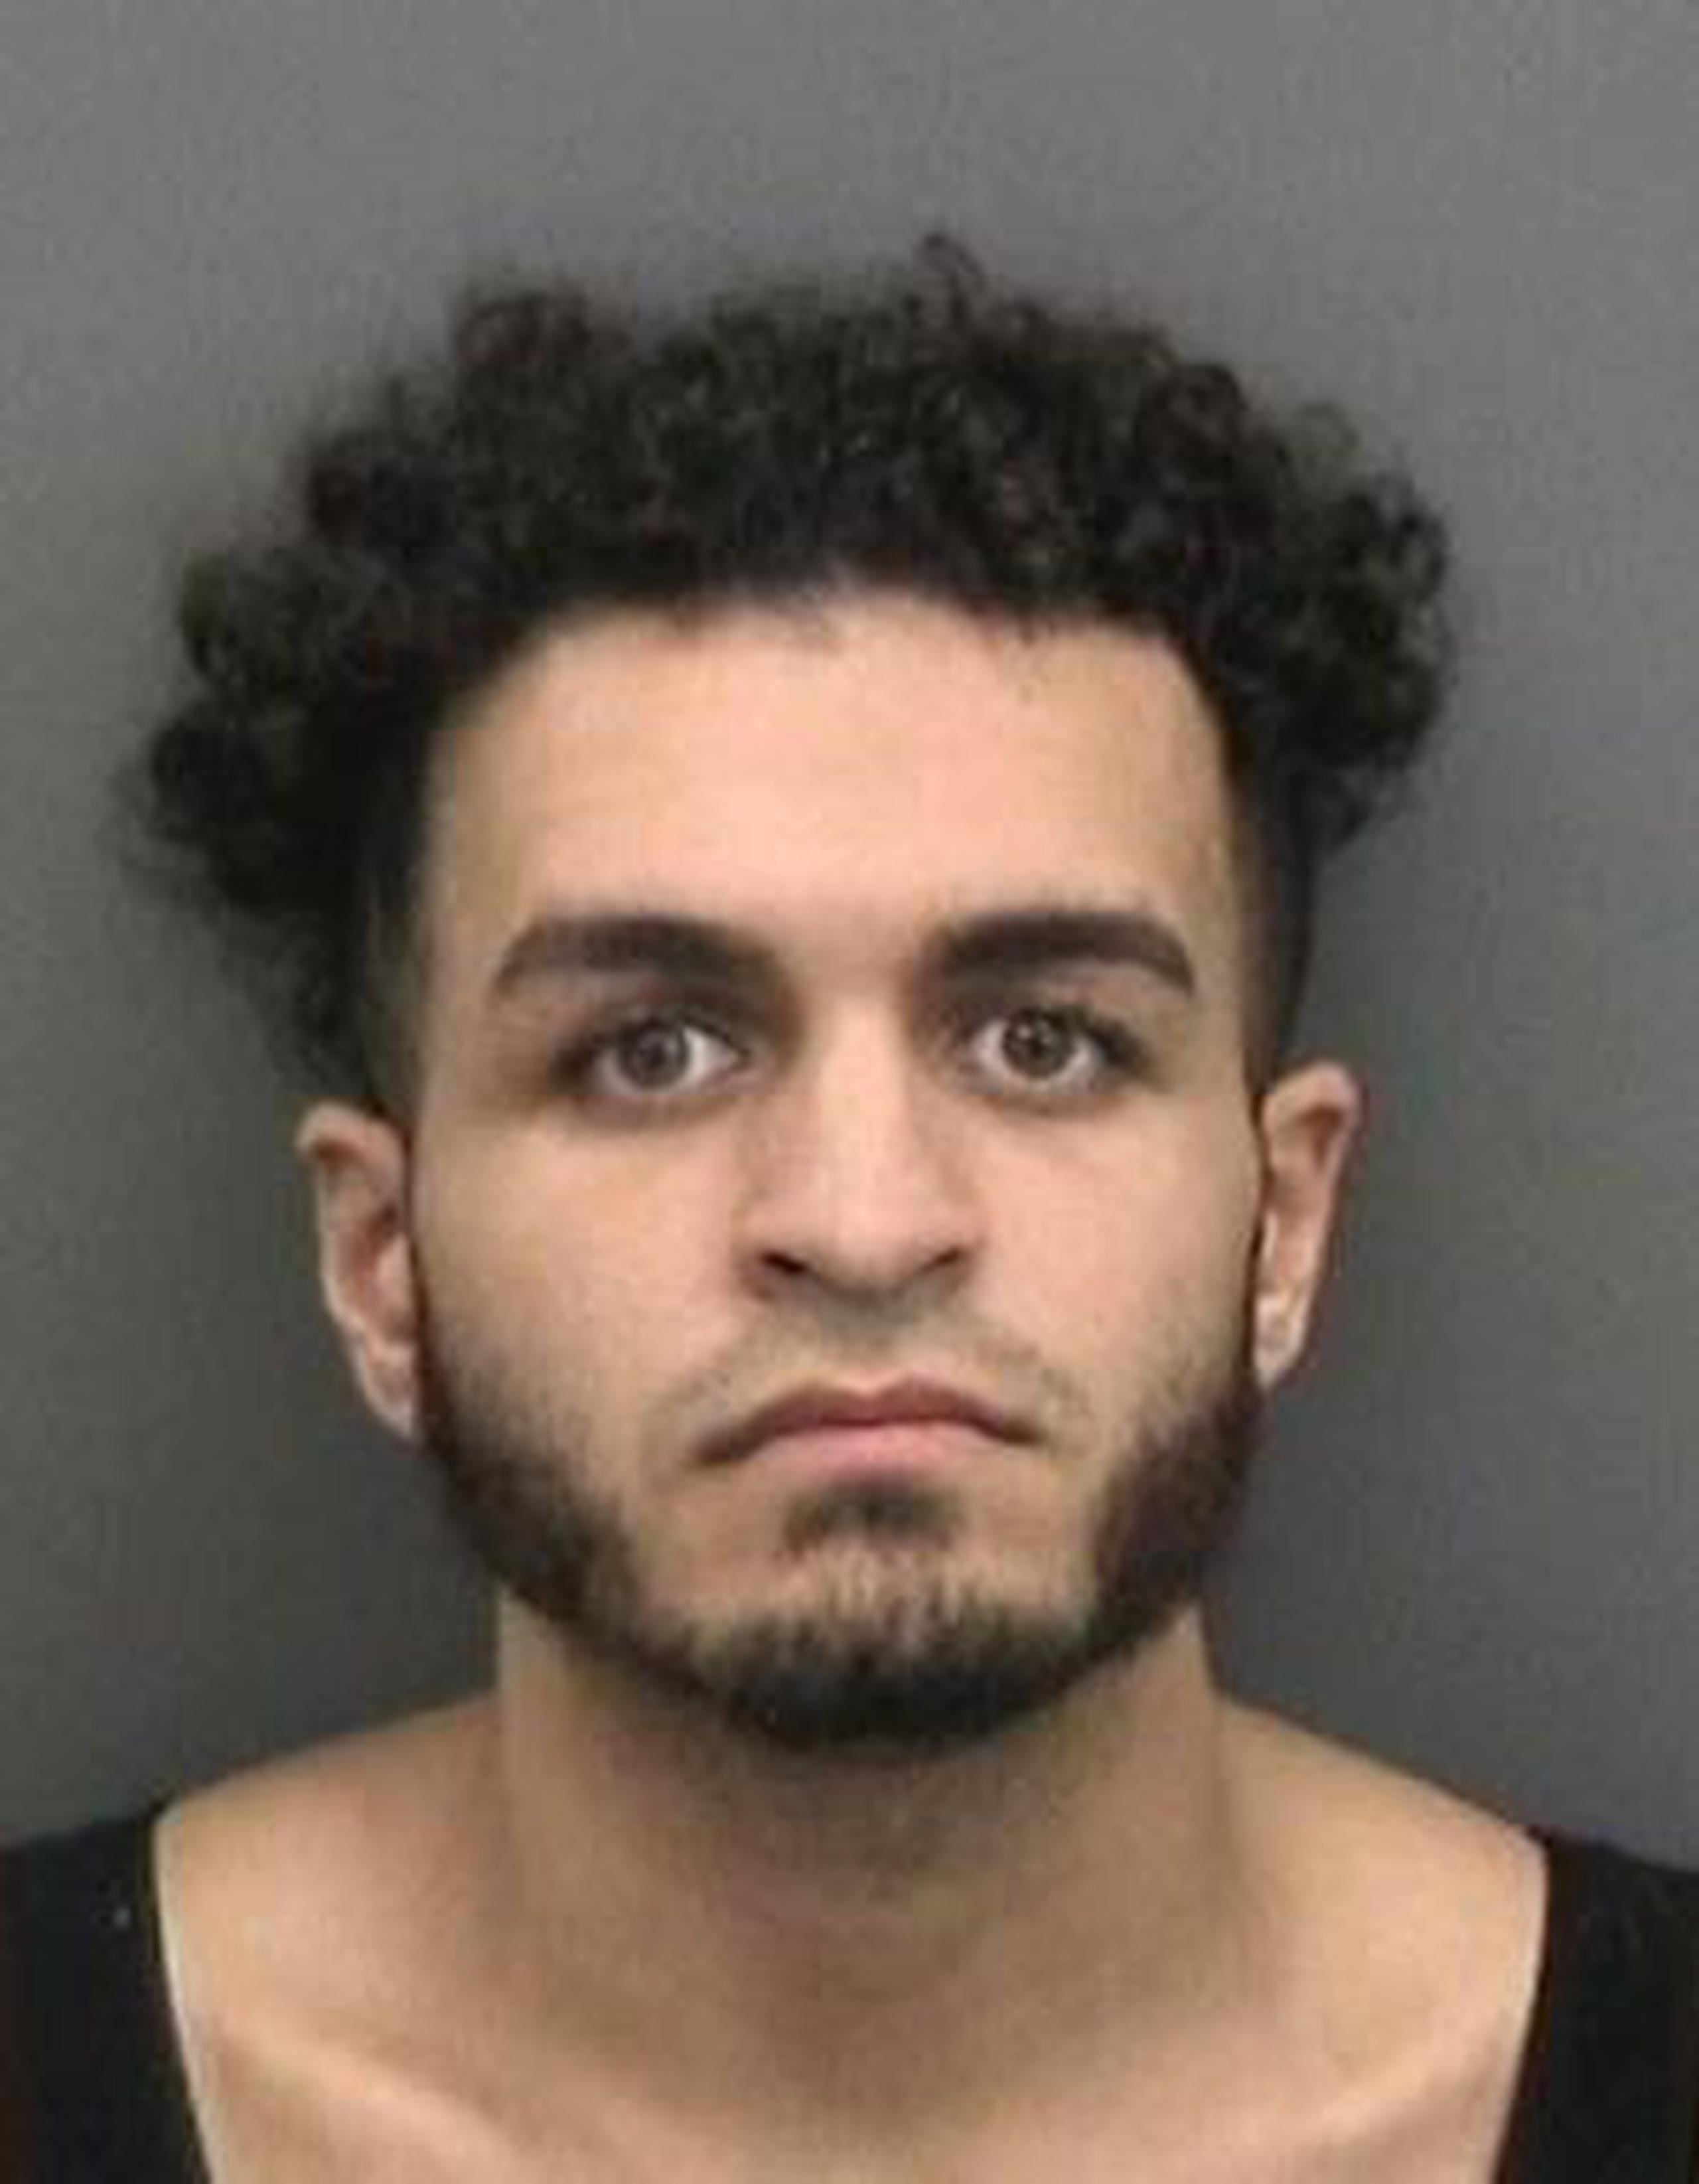 El imputado fue identificado como Ozcan Rodriguez Okur Jr., de 22 años. (Oficina del Sheriff del Condado de Hillsborough)